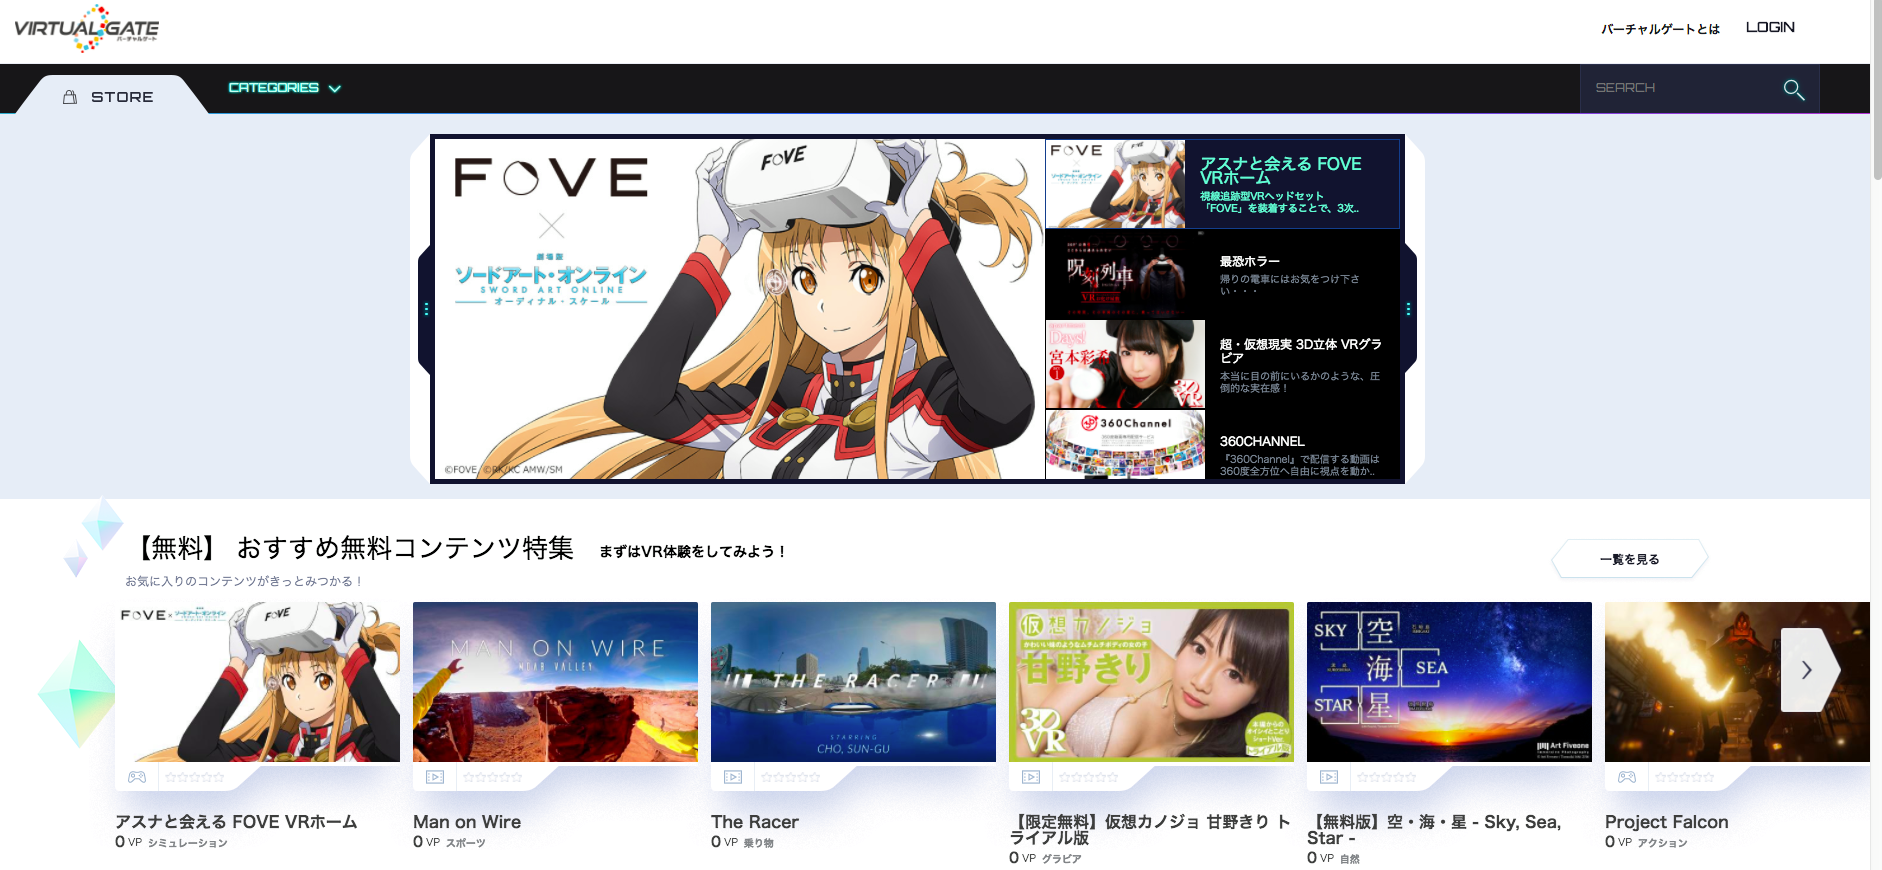 VirtualGate_메인페이지(일본).png